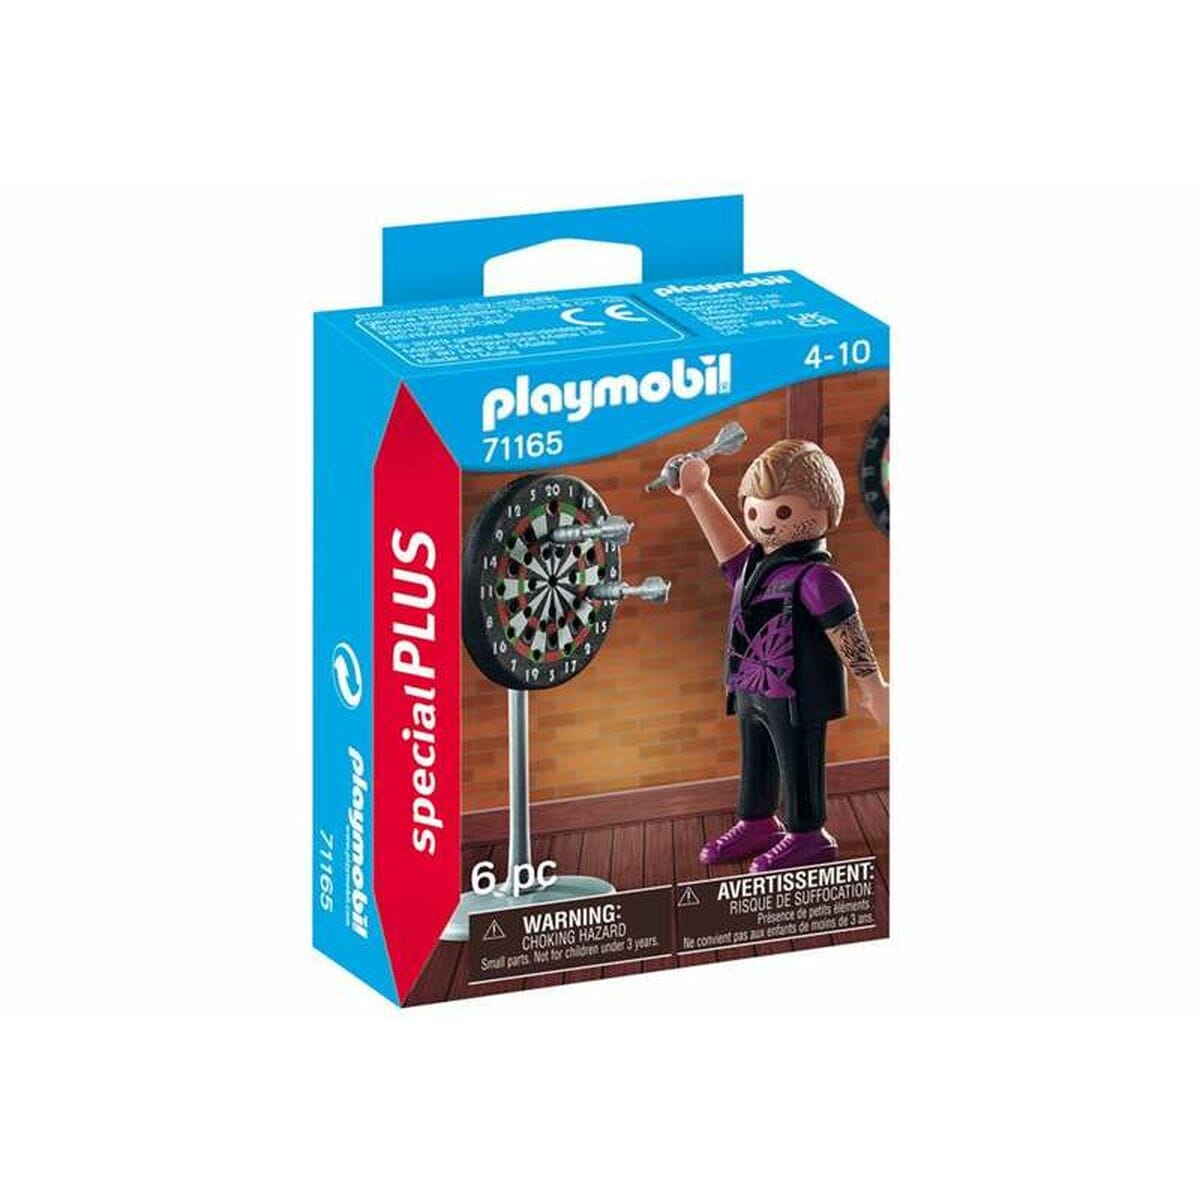 Playmobil Spielzeug | Kostüme > Spielzeug und Spiele > Weiteres spielzeug Playset Playmobil 71165 Darts Player 6 Stücke